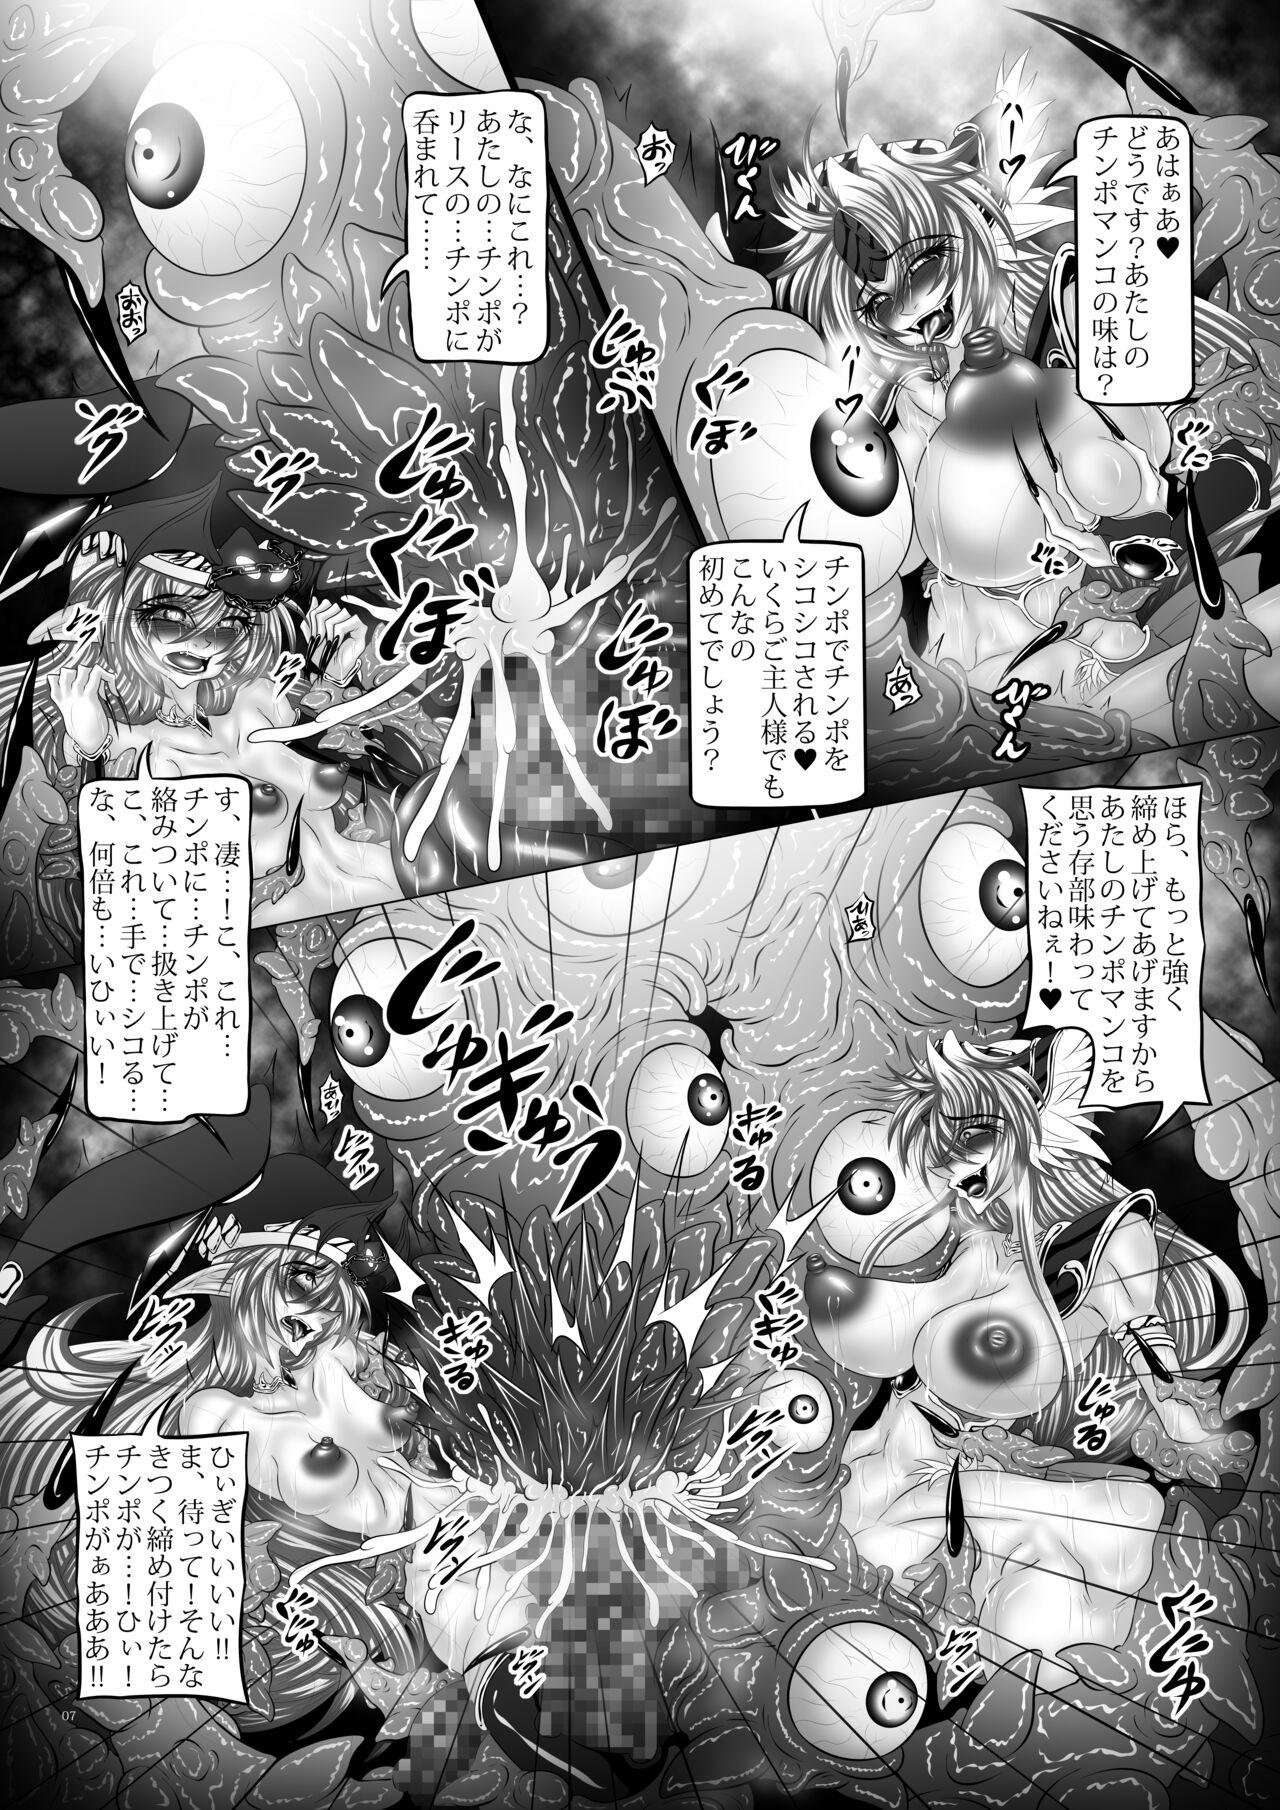 Sextape Dragon' s Fall V - Seiken densetsu 3 Real Couple - Page 6